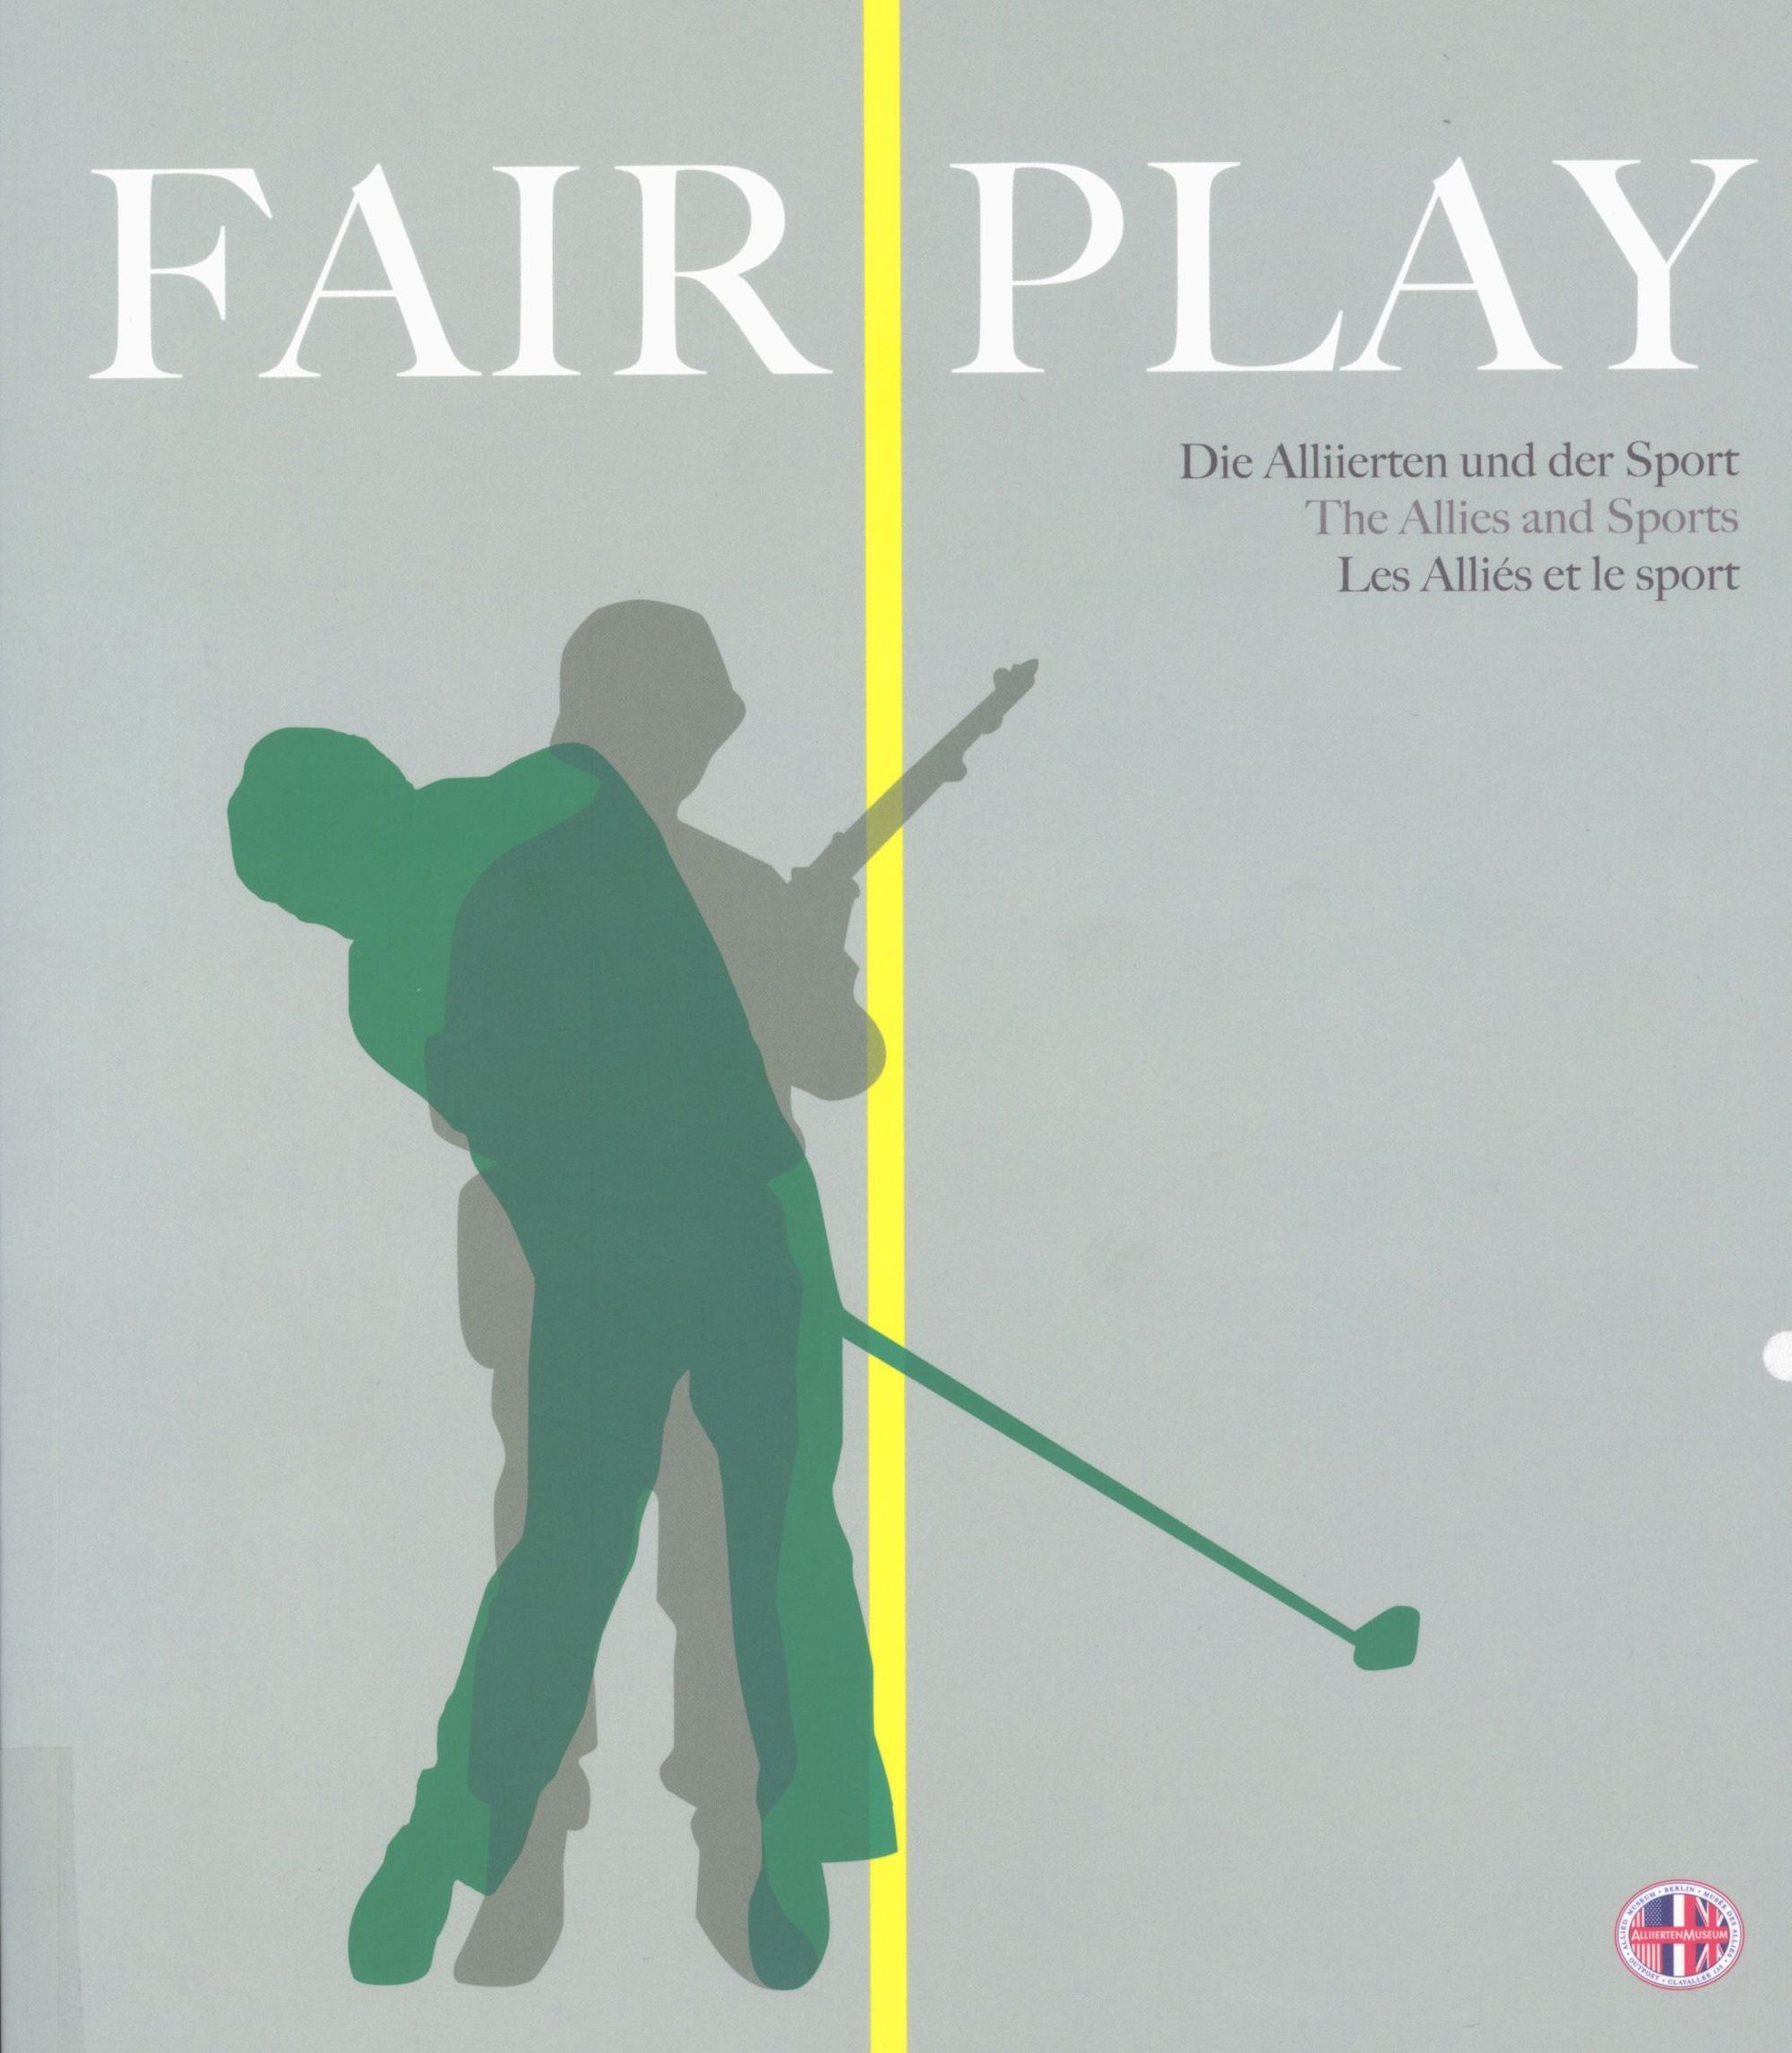 Fair Play. Les Alliés et le sport